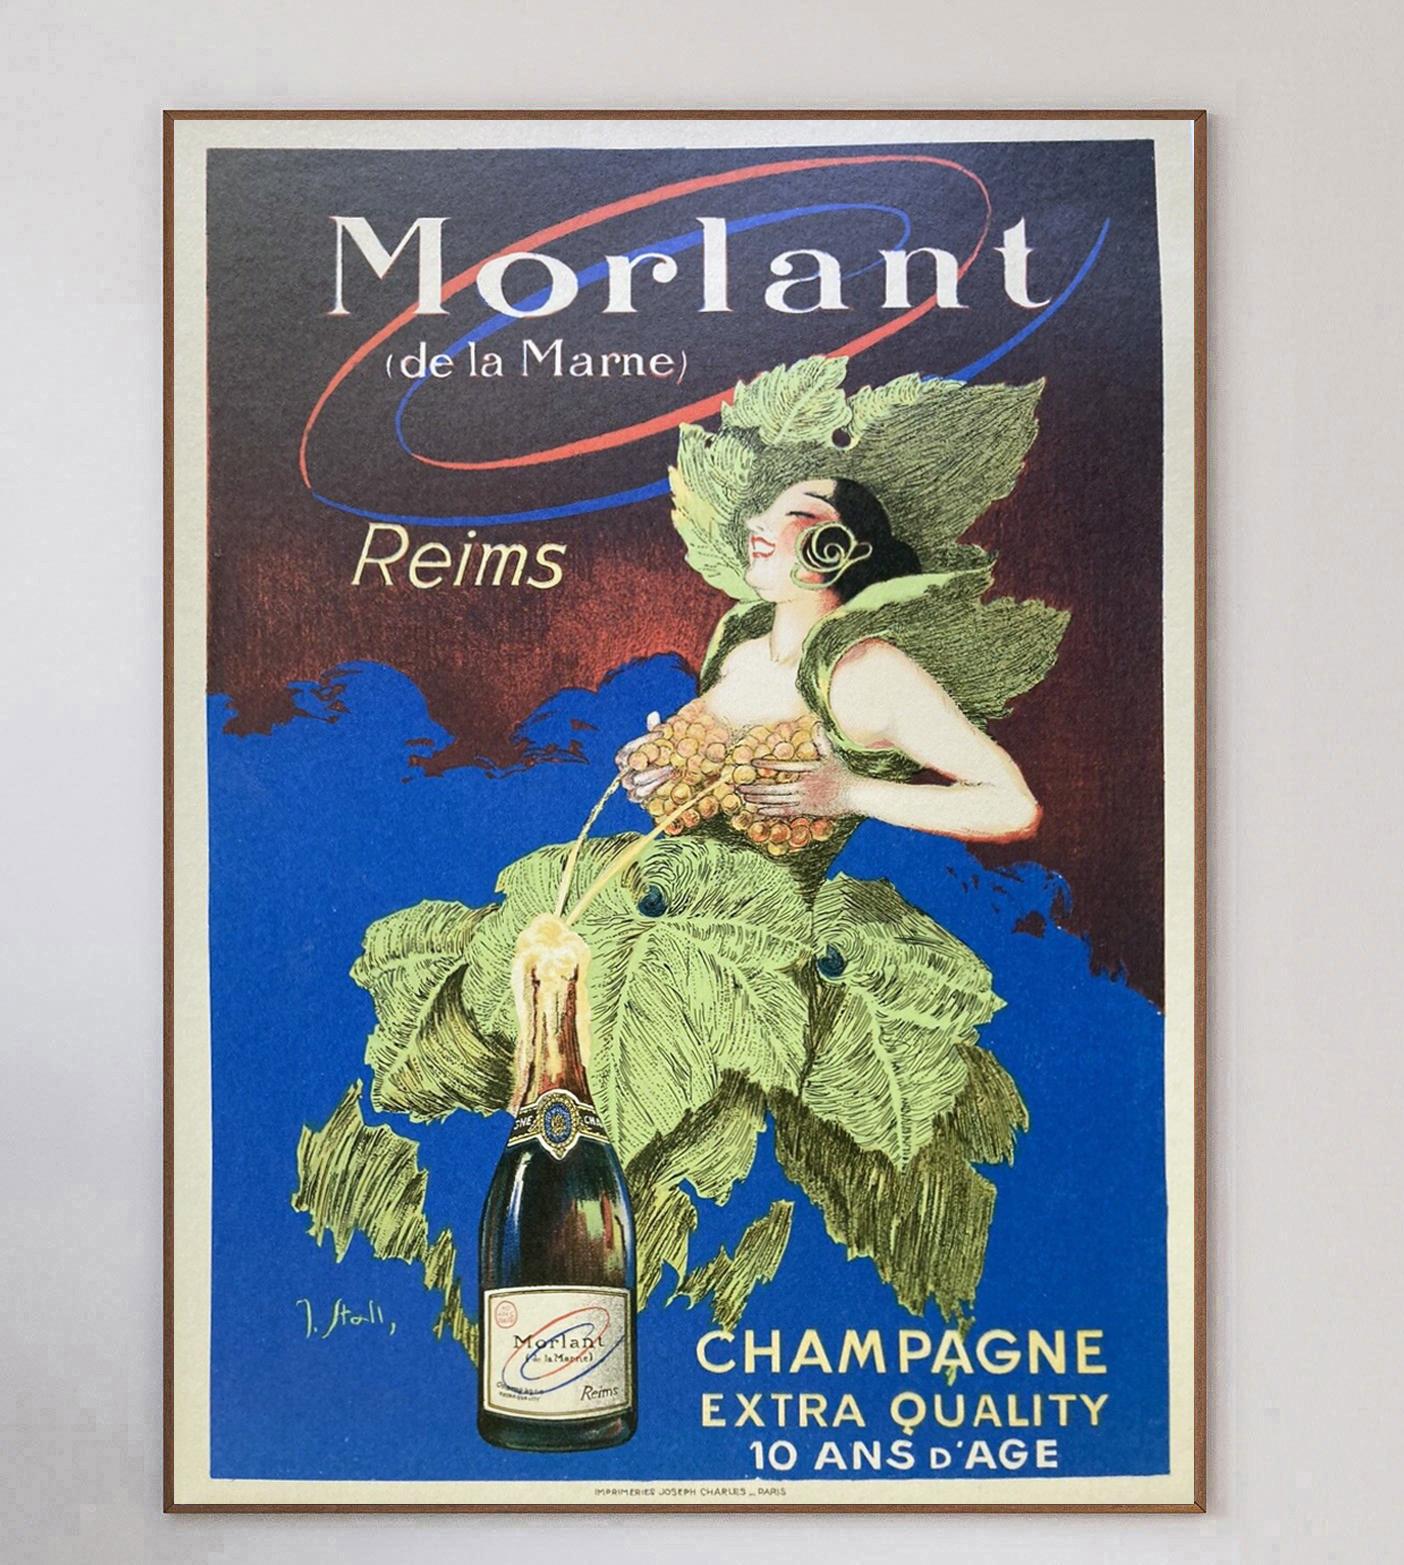 Belle affiche pour Morlant, le champagne français de Reims dans la Marne, en France. Avec une superbe illustration de J. Stall, cette affiche du début du 20e siècle représente une femme en vigne qui remplit la bouteille de champagne 